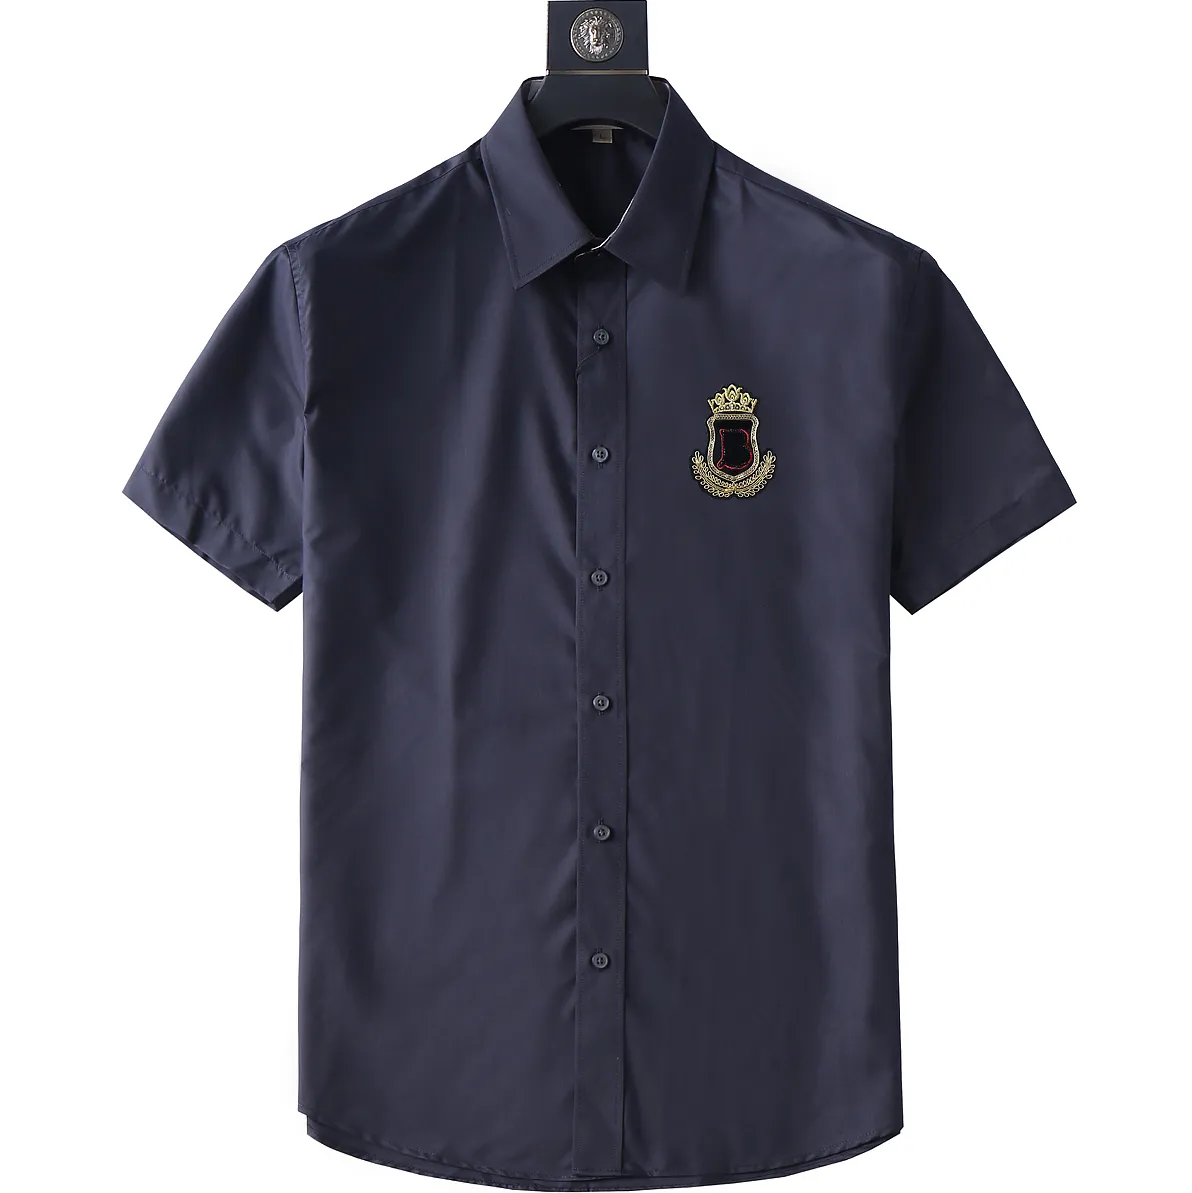 Luxur Designer Men's Business Black Gold Embroidery Shirt Men's Dress Shirt Stand Collar Button-Down Shirt M-3X